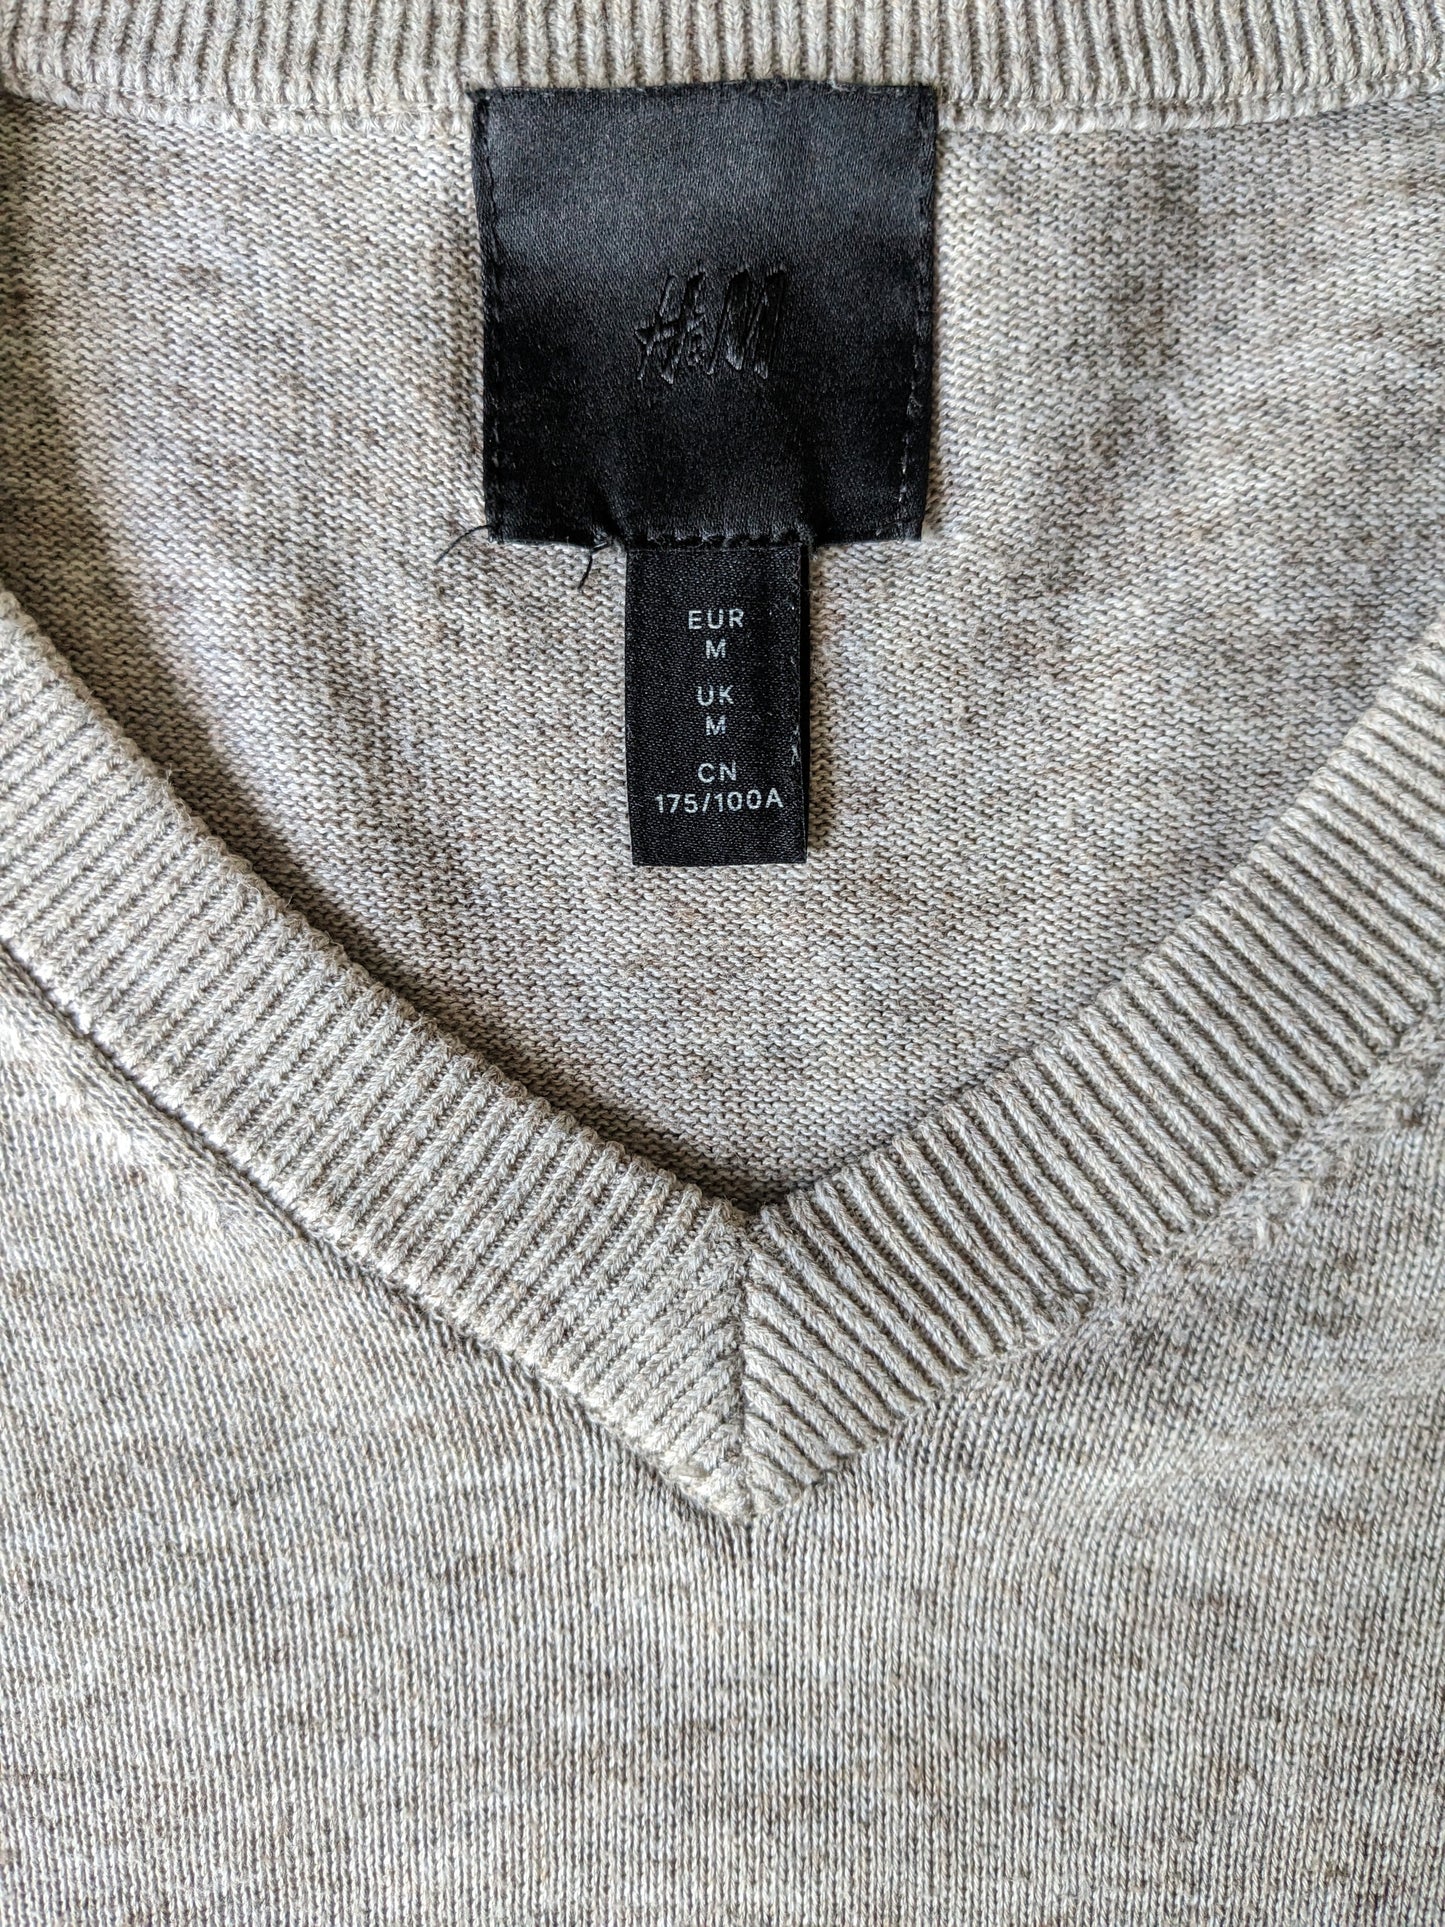 Suéter H&M con cuello en V. Beige marrón mezclado. Talla M.